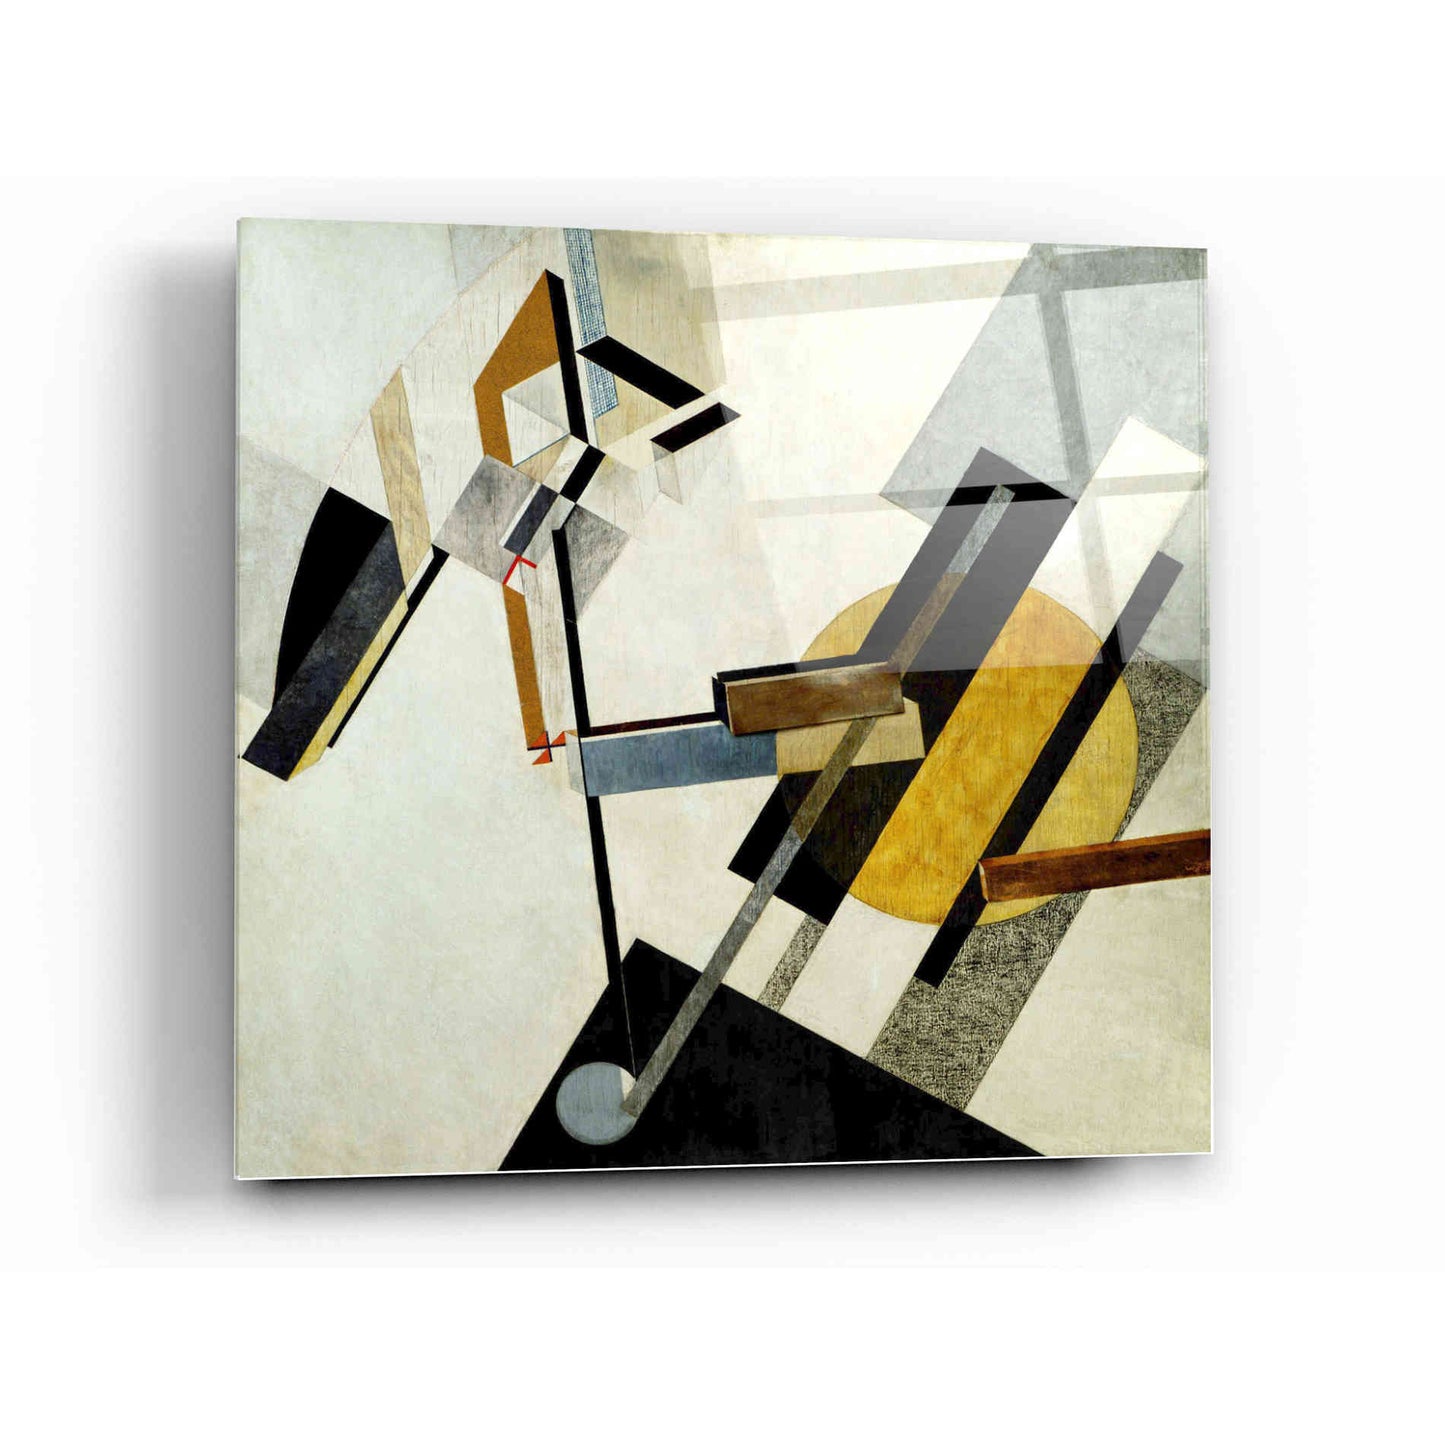 Epic Art 'Proun 19D' by El Lissitzky Acrylic Glass Wall Art,12x12